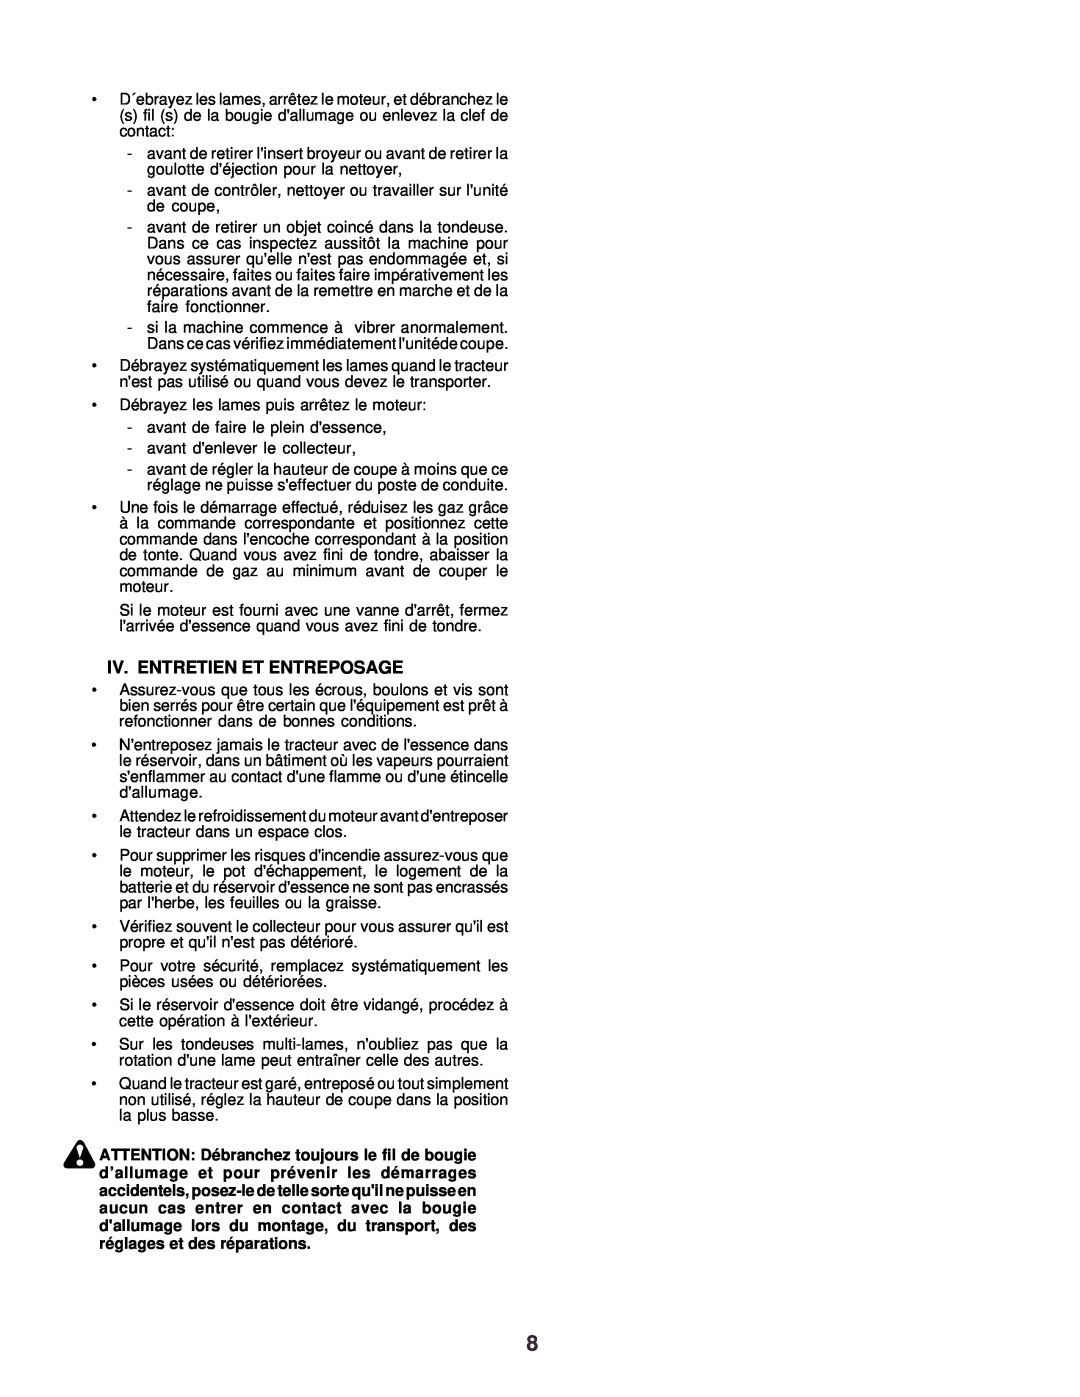 Husqvarna CTH130 instruction manual Iv. Entretien Et Entreposage 